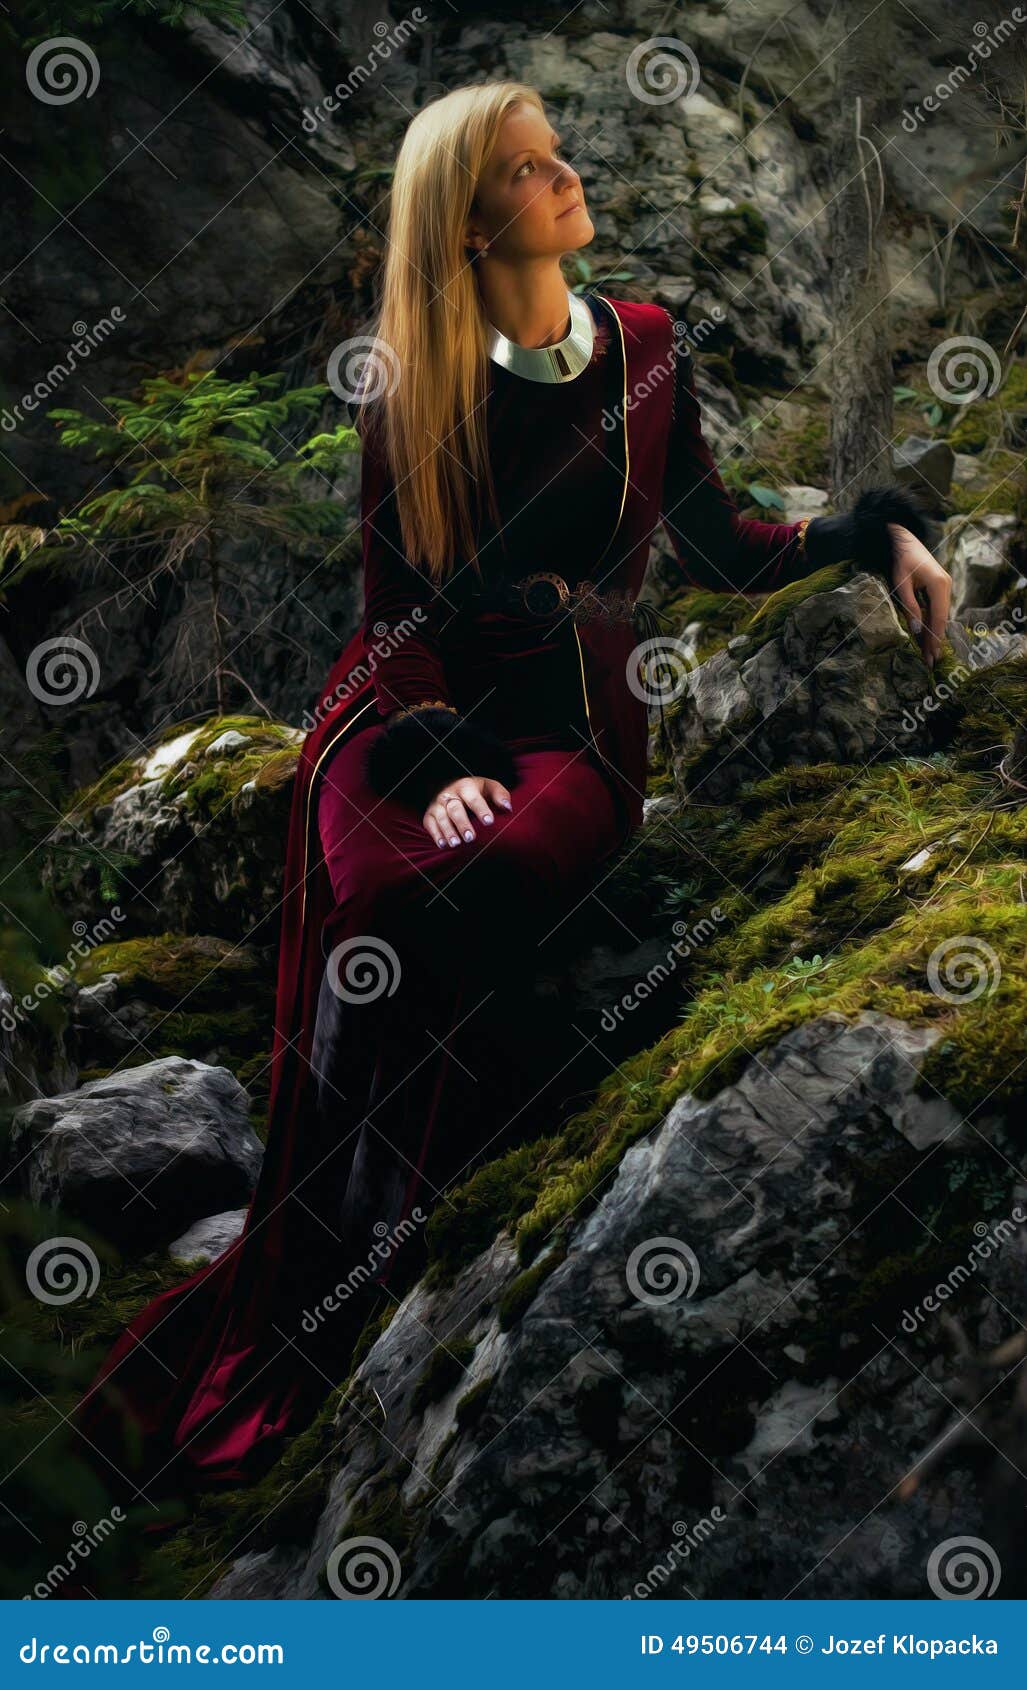 有长的金发的美丽的妇女神仙在一件历史褂子坐amids moos被盖的岩石. 有长的金发的一位美丽的妇女神仙在一件历史褂子坐在迷人forestral风景的amids moos被盖的岩石